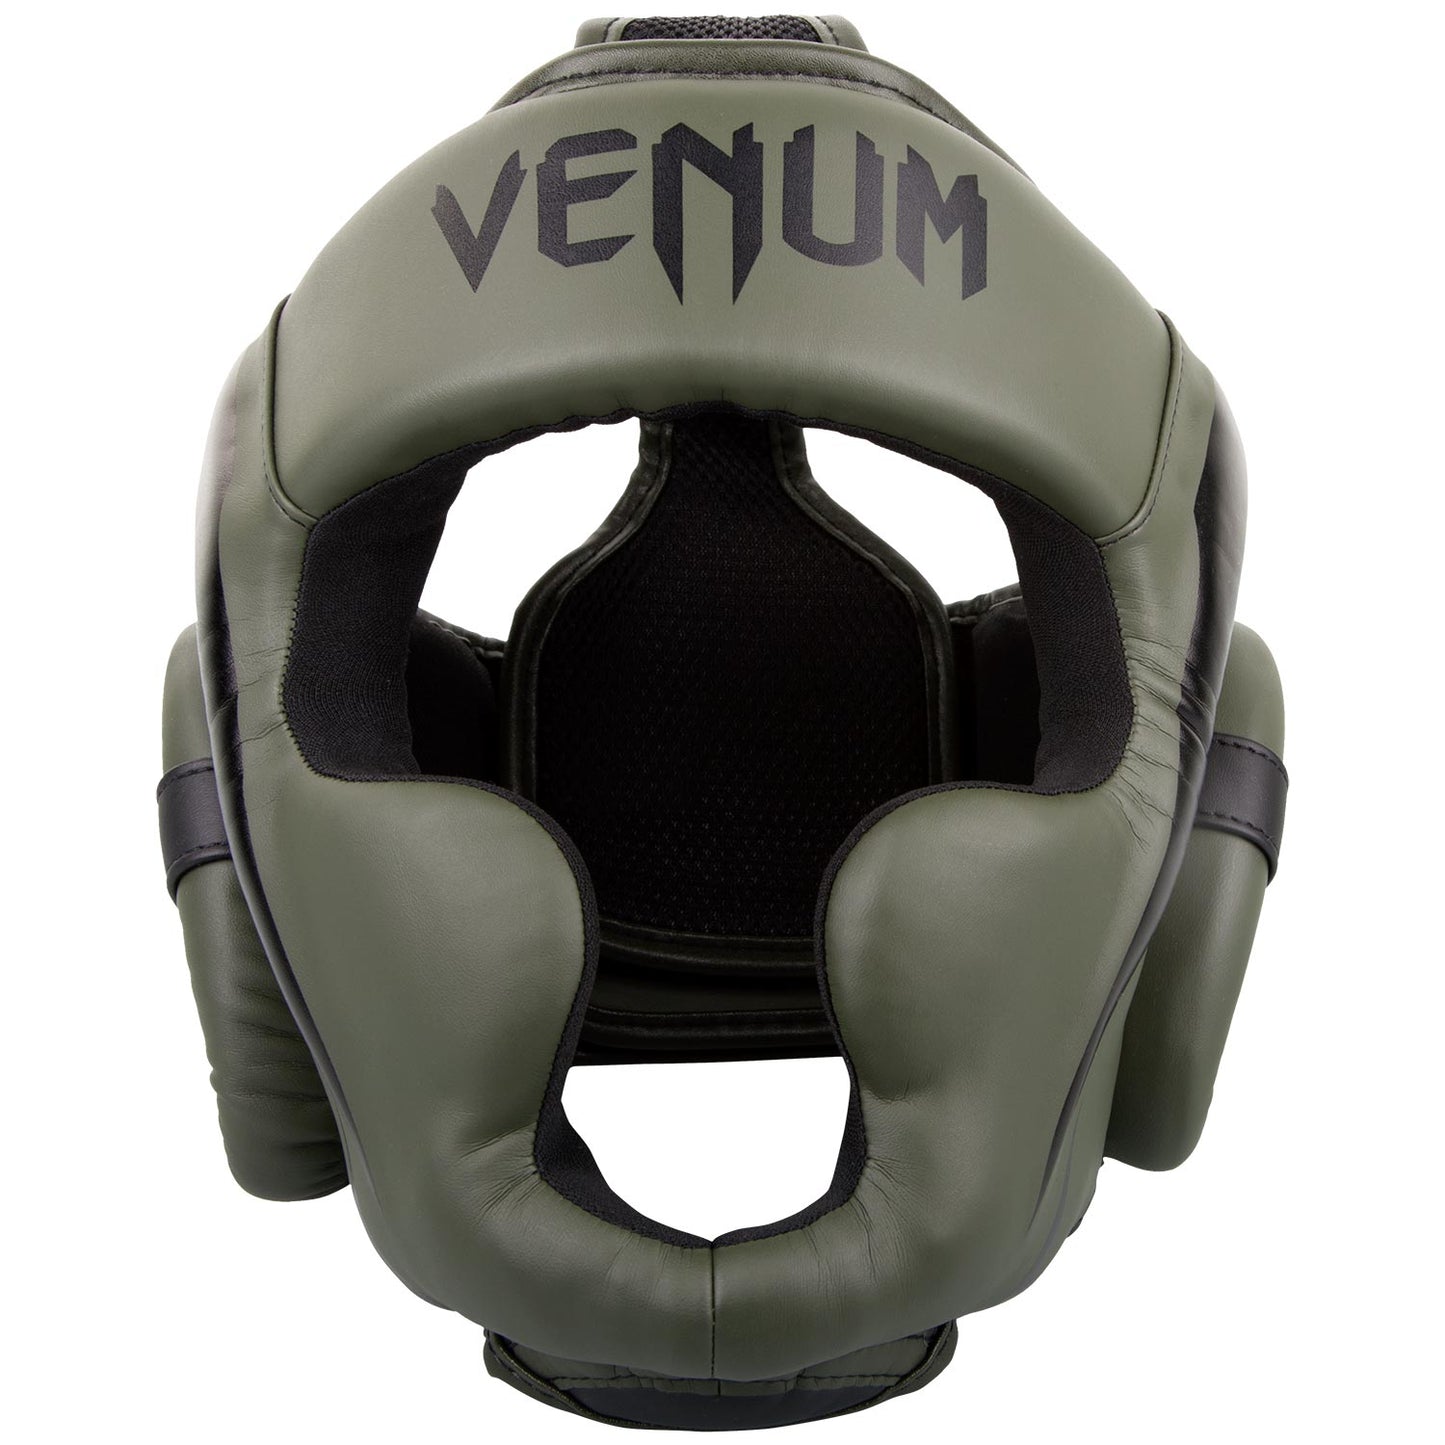 Venum Elite Kopfschutz - Khaki/Schwarz